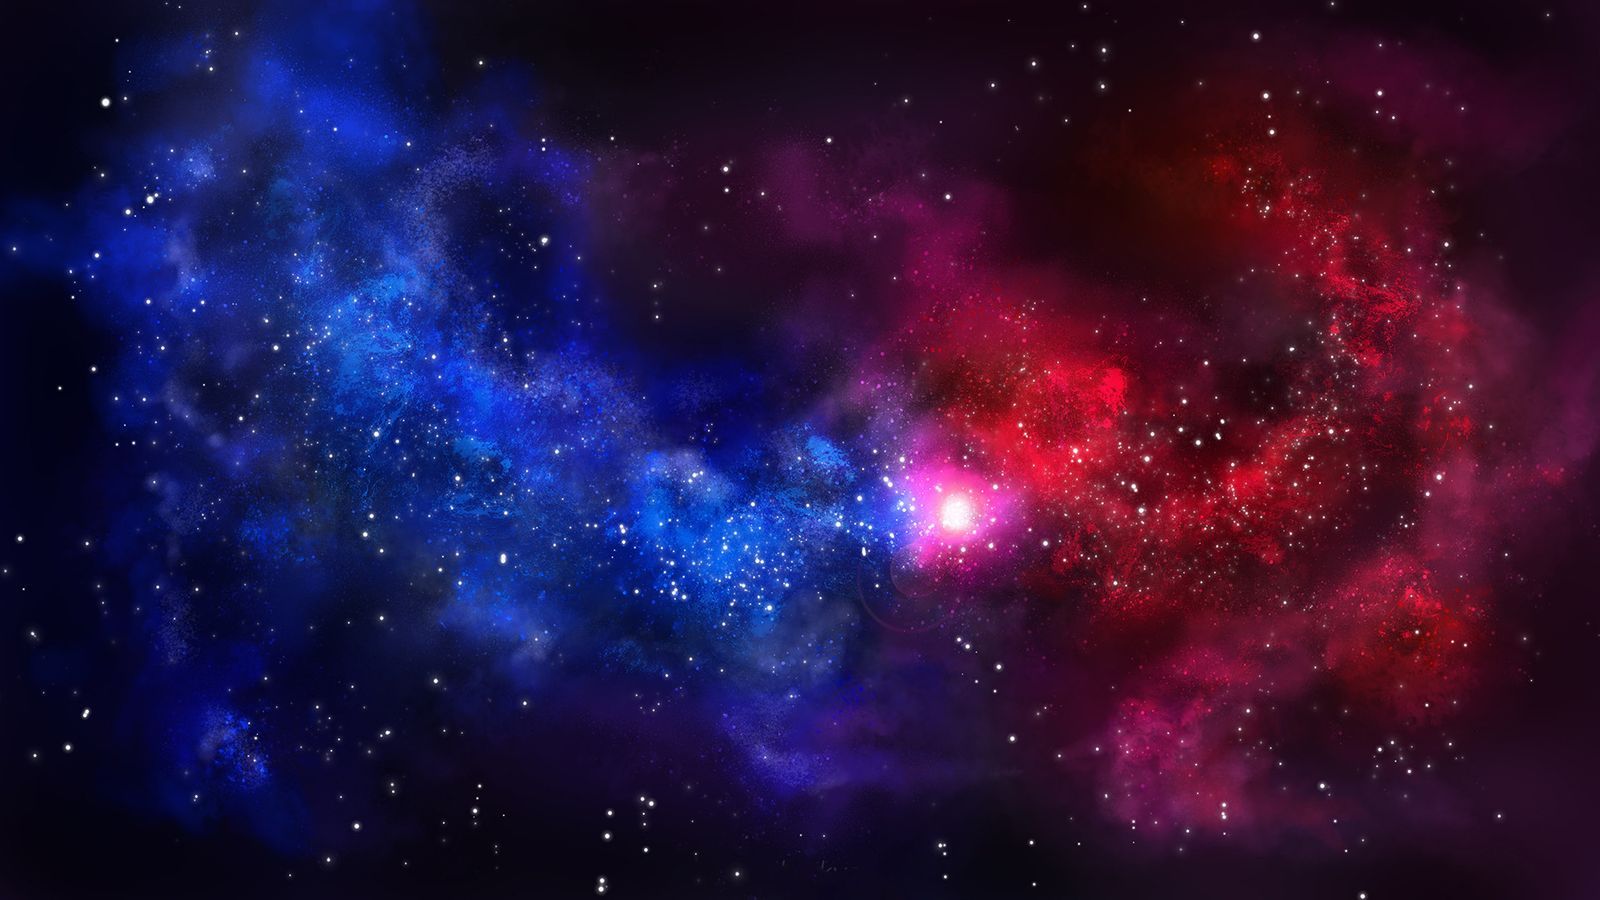 Hình nền Vũ trụ Xanh Dương trên WallpaperDog mang tới một cảm giác mê hoặc và bí ẩn về vũ trụ, với sắc xanh dương đặc trưng. Những hình ảnh vệ tinh đầy tinh tế và các sao chổi rực rỡ trên nền đen giúp mang đến cho người dùng một trải nghiệm không thể nào quên trên màn hình của bạn.